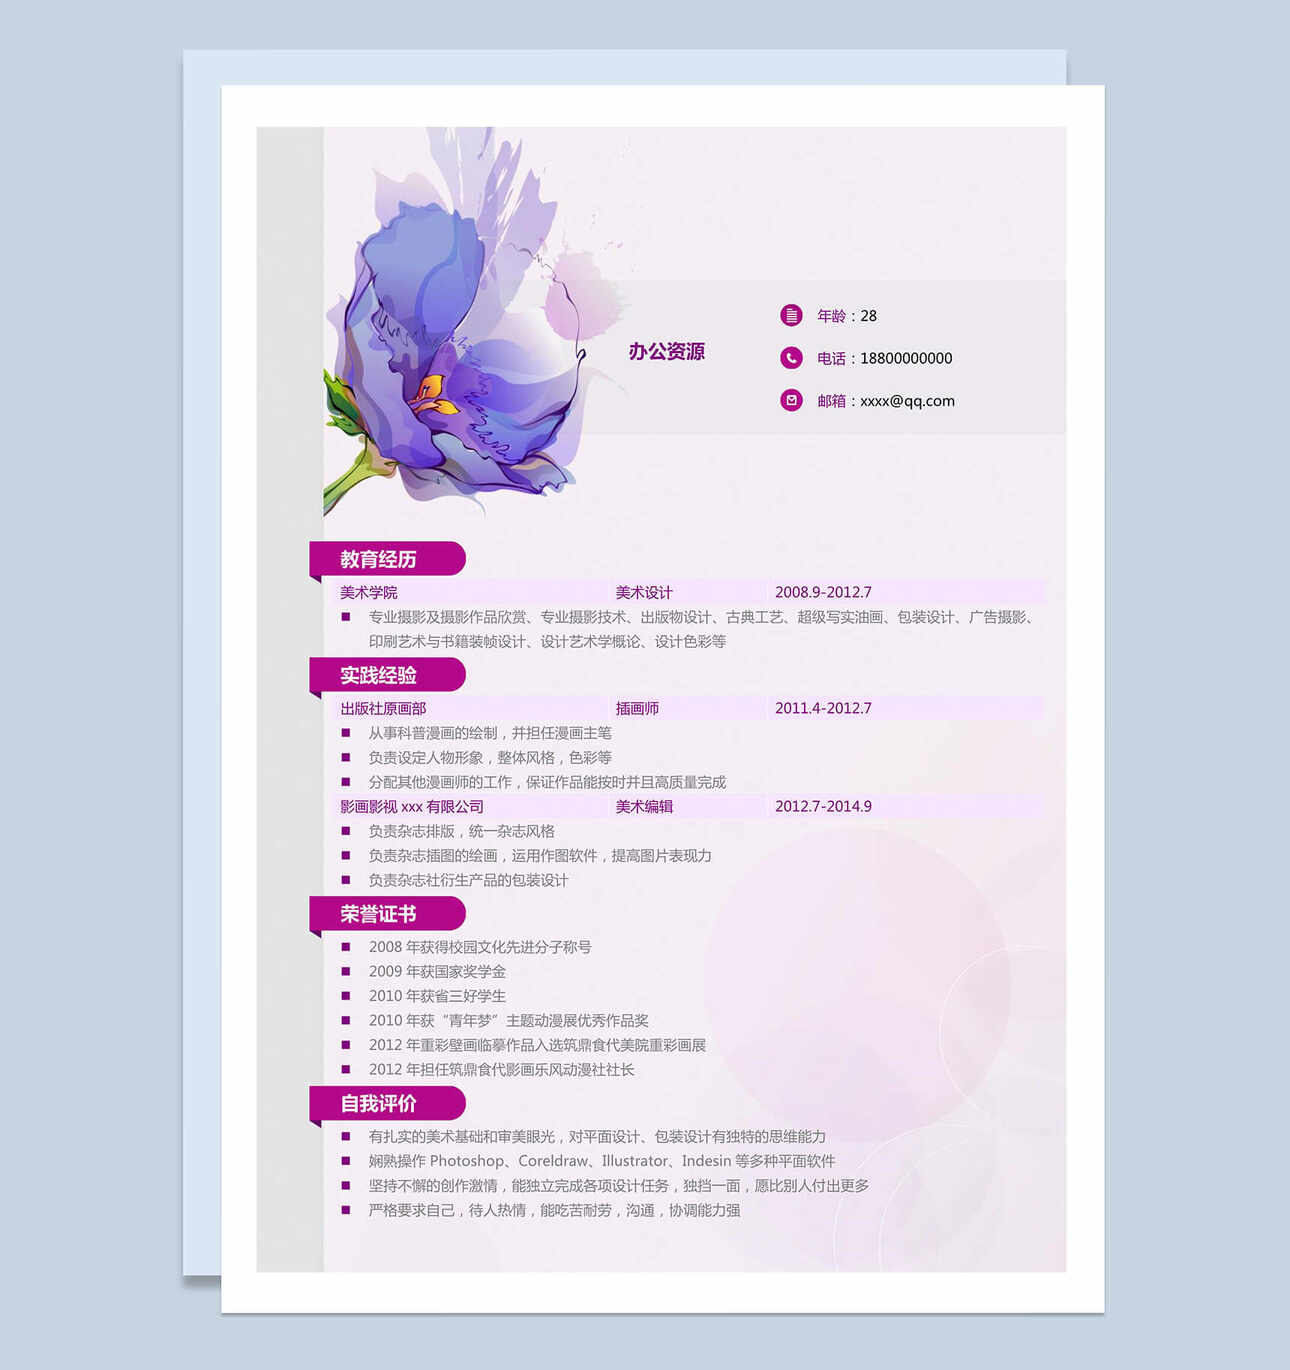 紫色花卉摄影摄像求职简历Word模板梦想PPT推荐